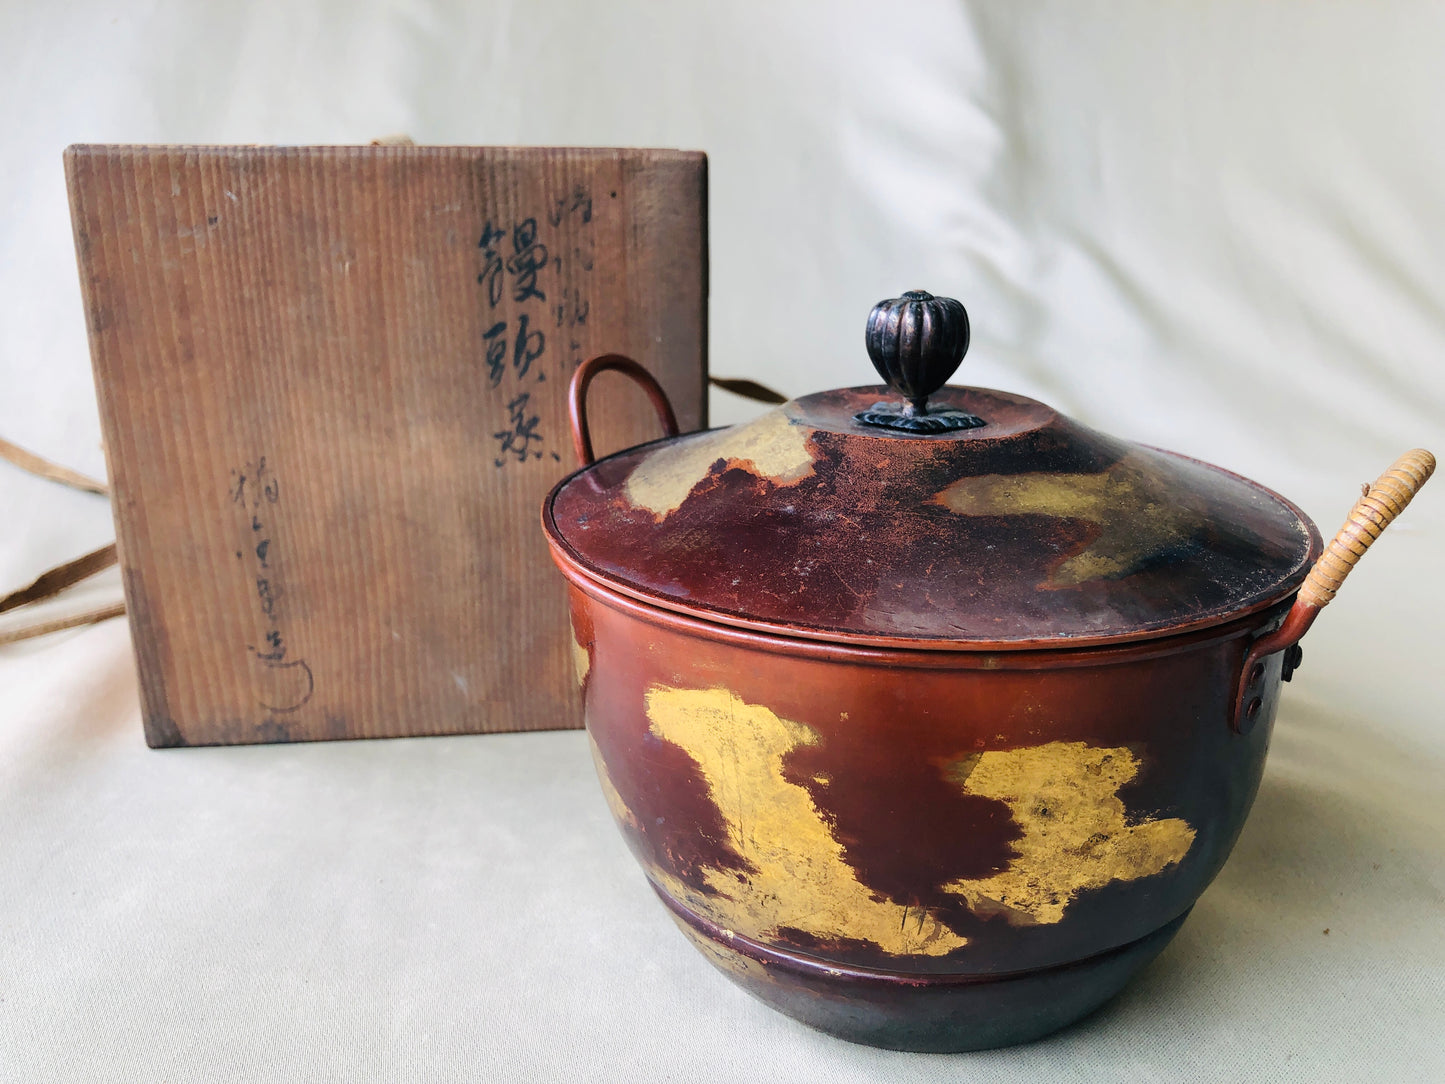 Y4313 STEAMER Copper food steam cooker signed box Japan antique vintage kitchen